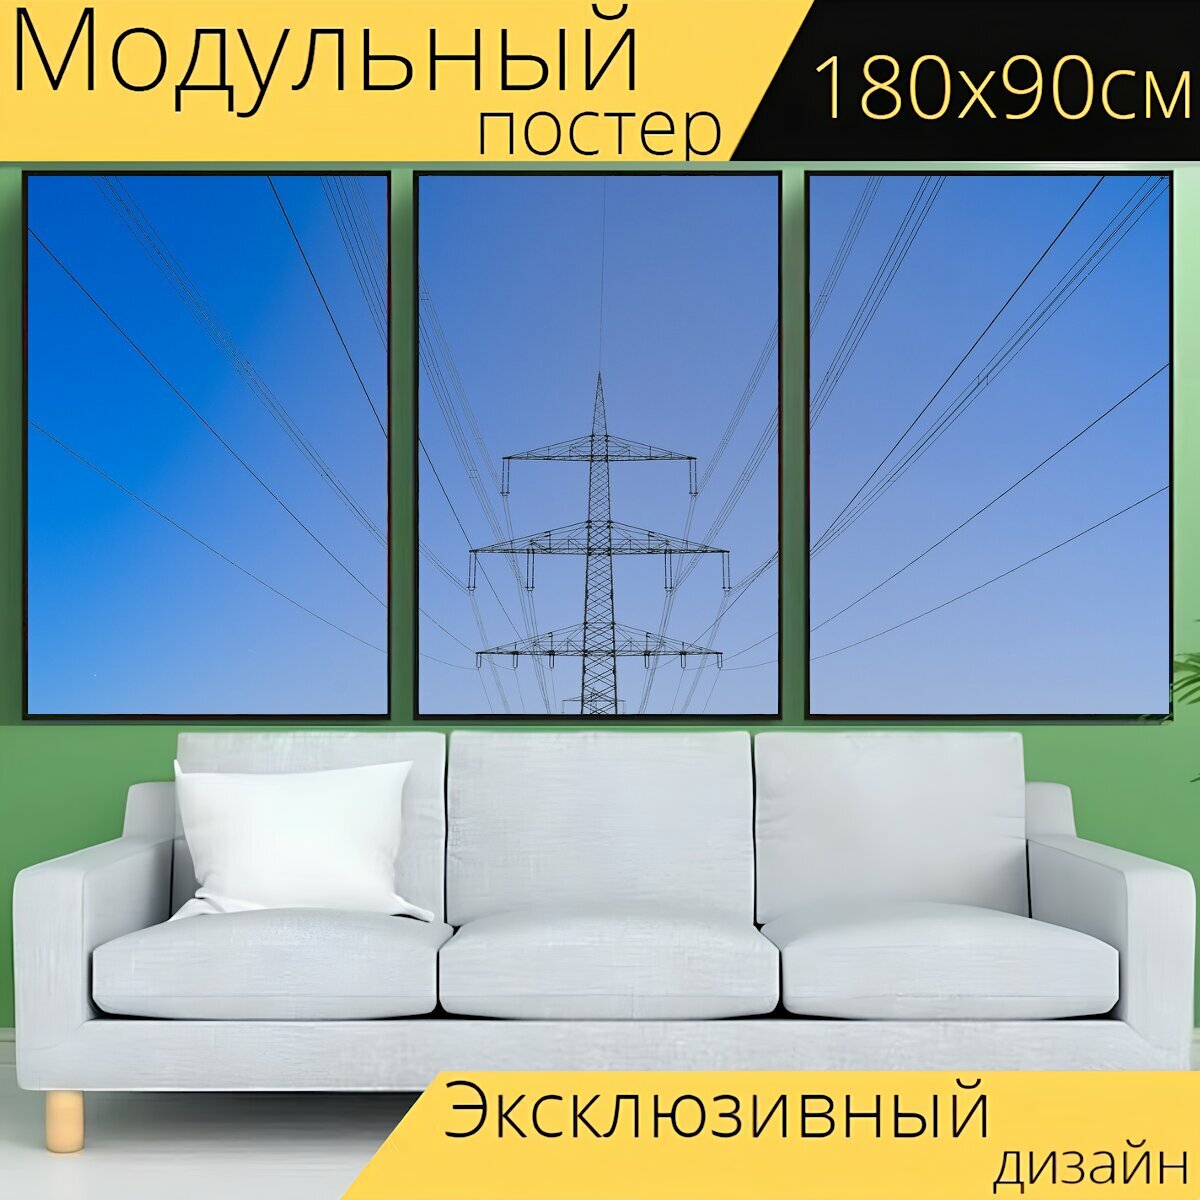 Модульный постер "Электрика, высокое напряжение, электричество" 180 x 90 см. для интерьера